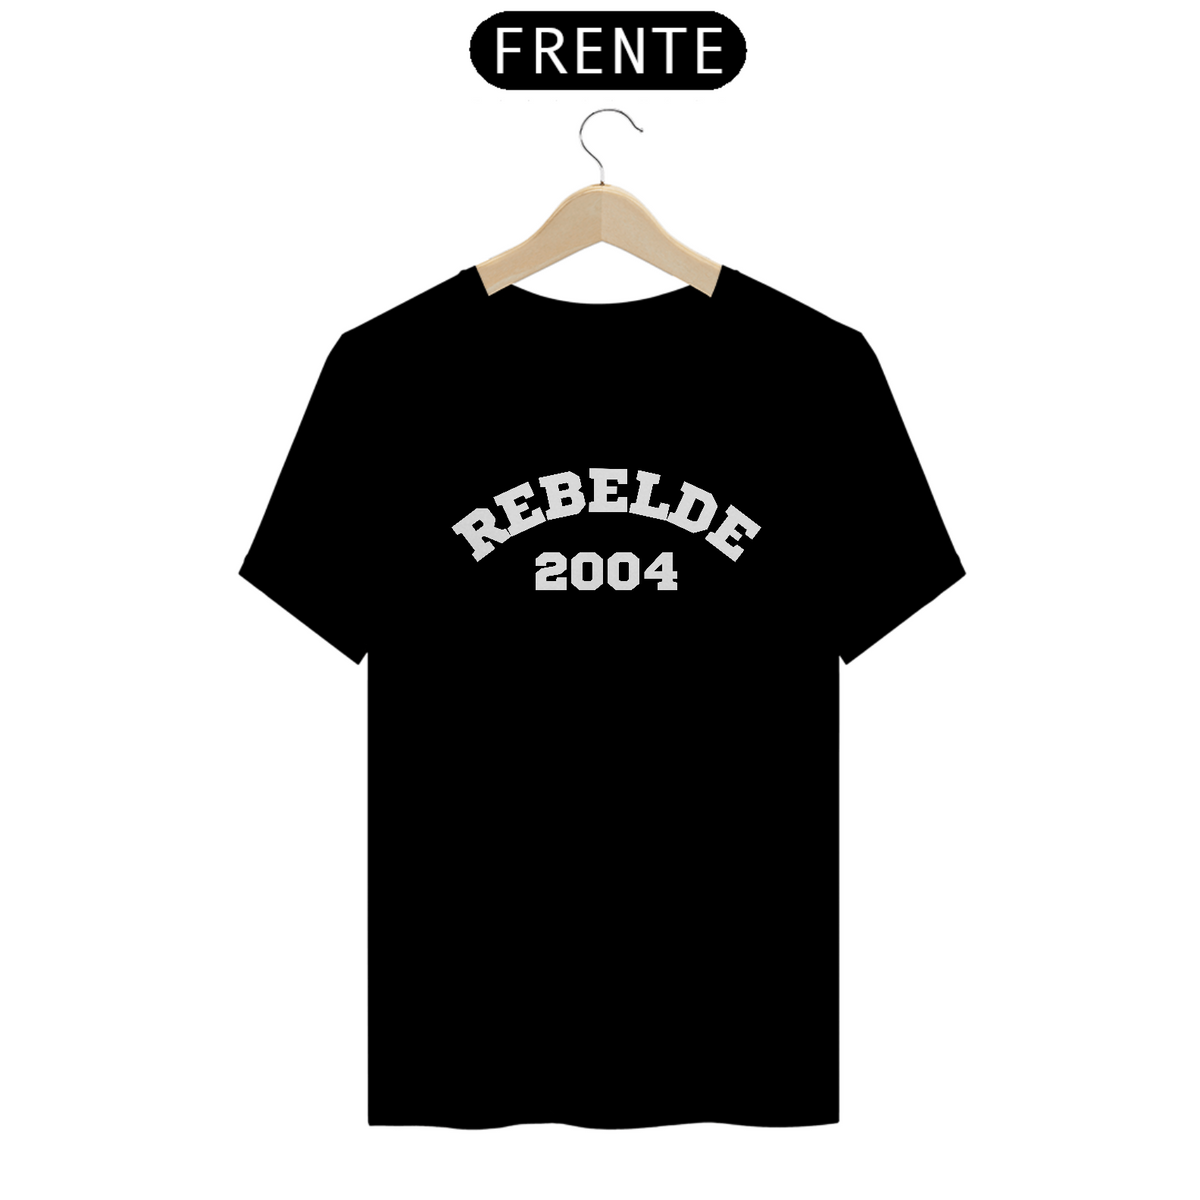 Nome do produto: Camiseta Unissex - Rebelde 2004 